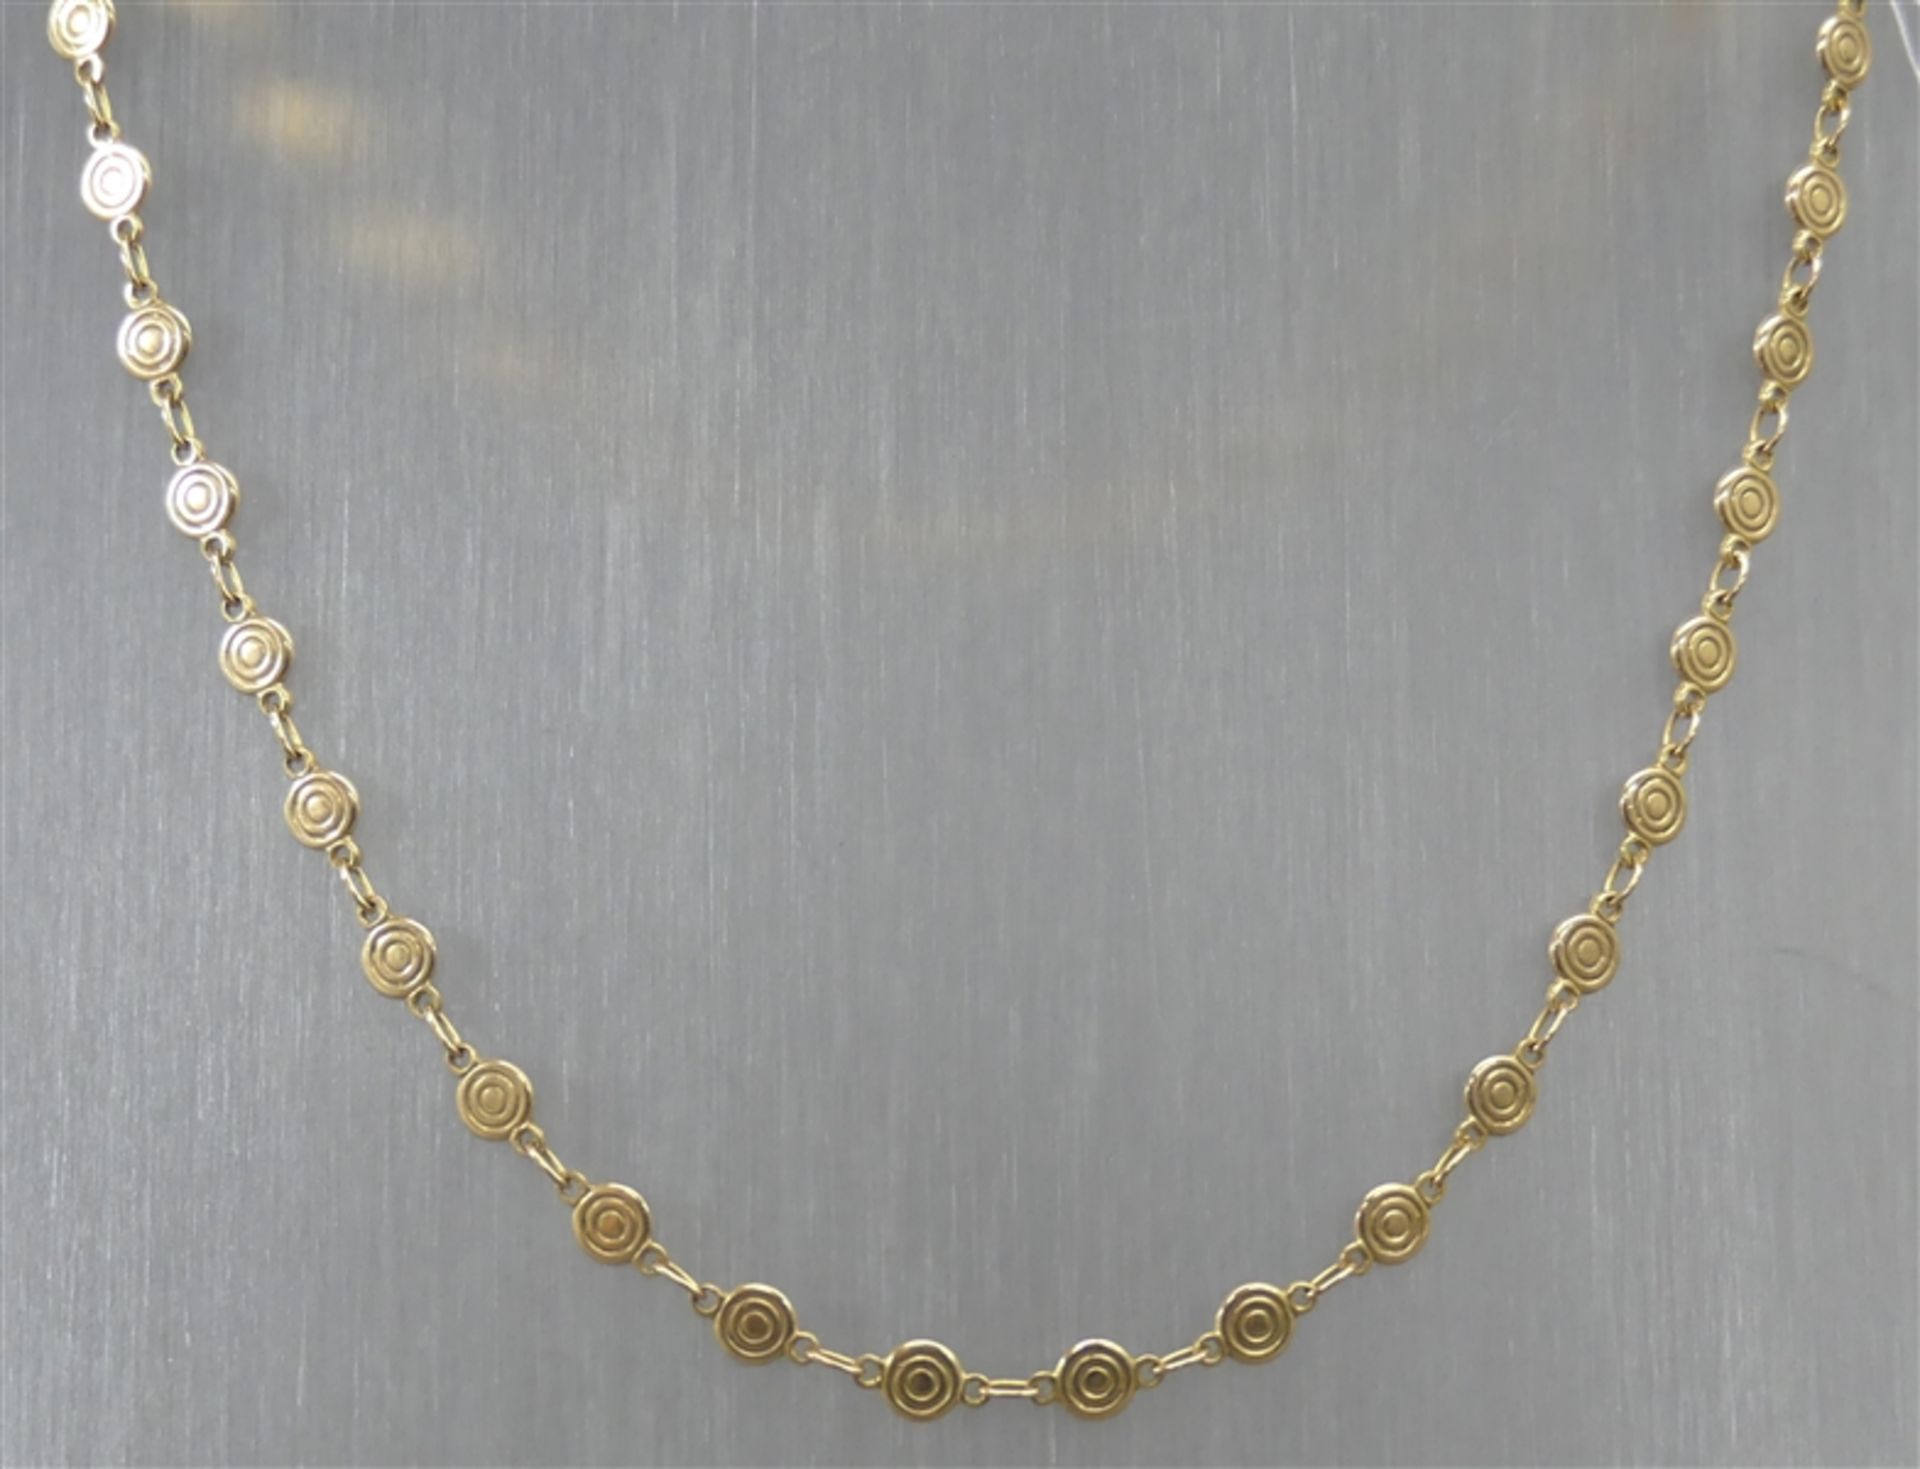 Halskette 14 kt. Gelbgold, runde Plättchen, Karabinerverschluss, ca. 12 g schwer, l 44 cm,